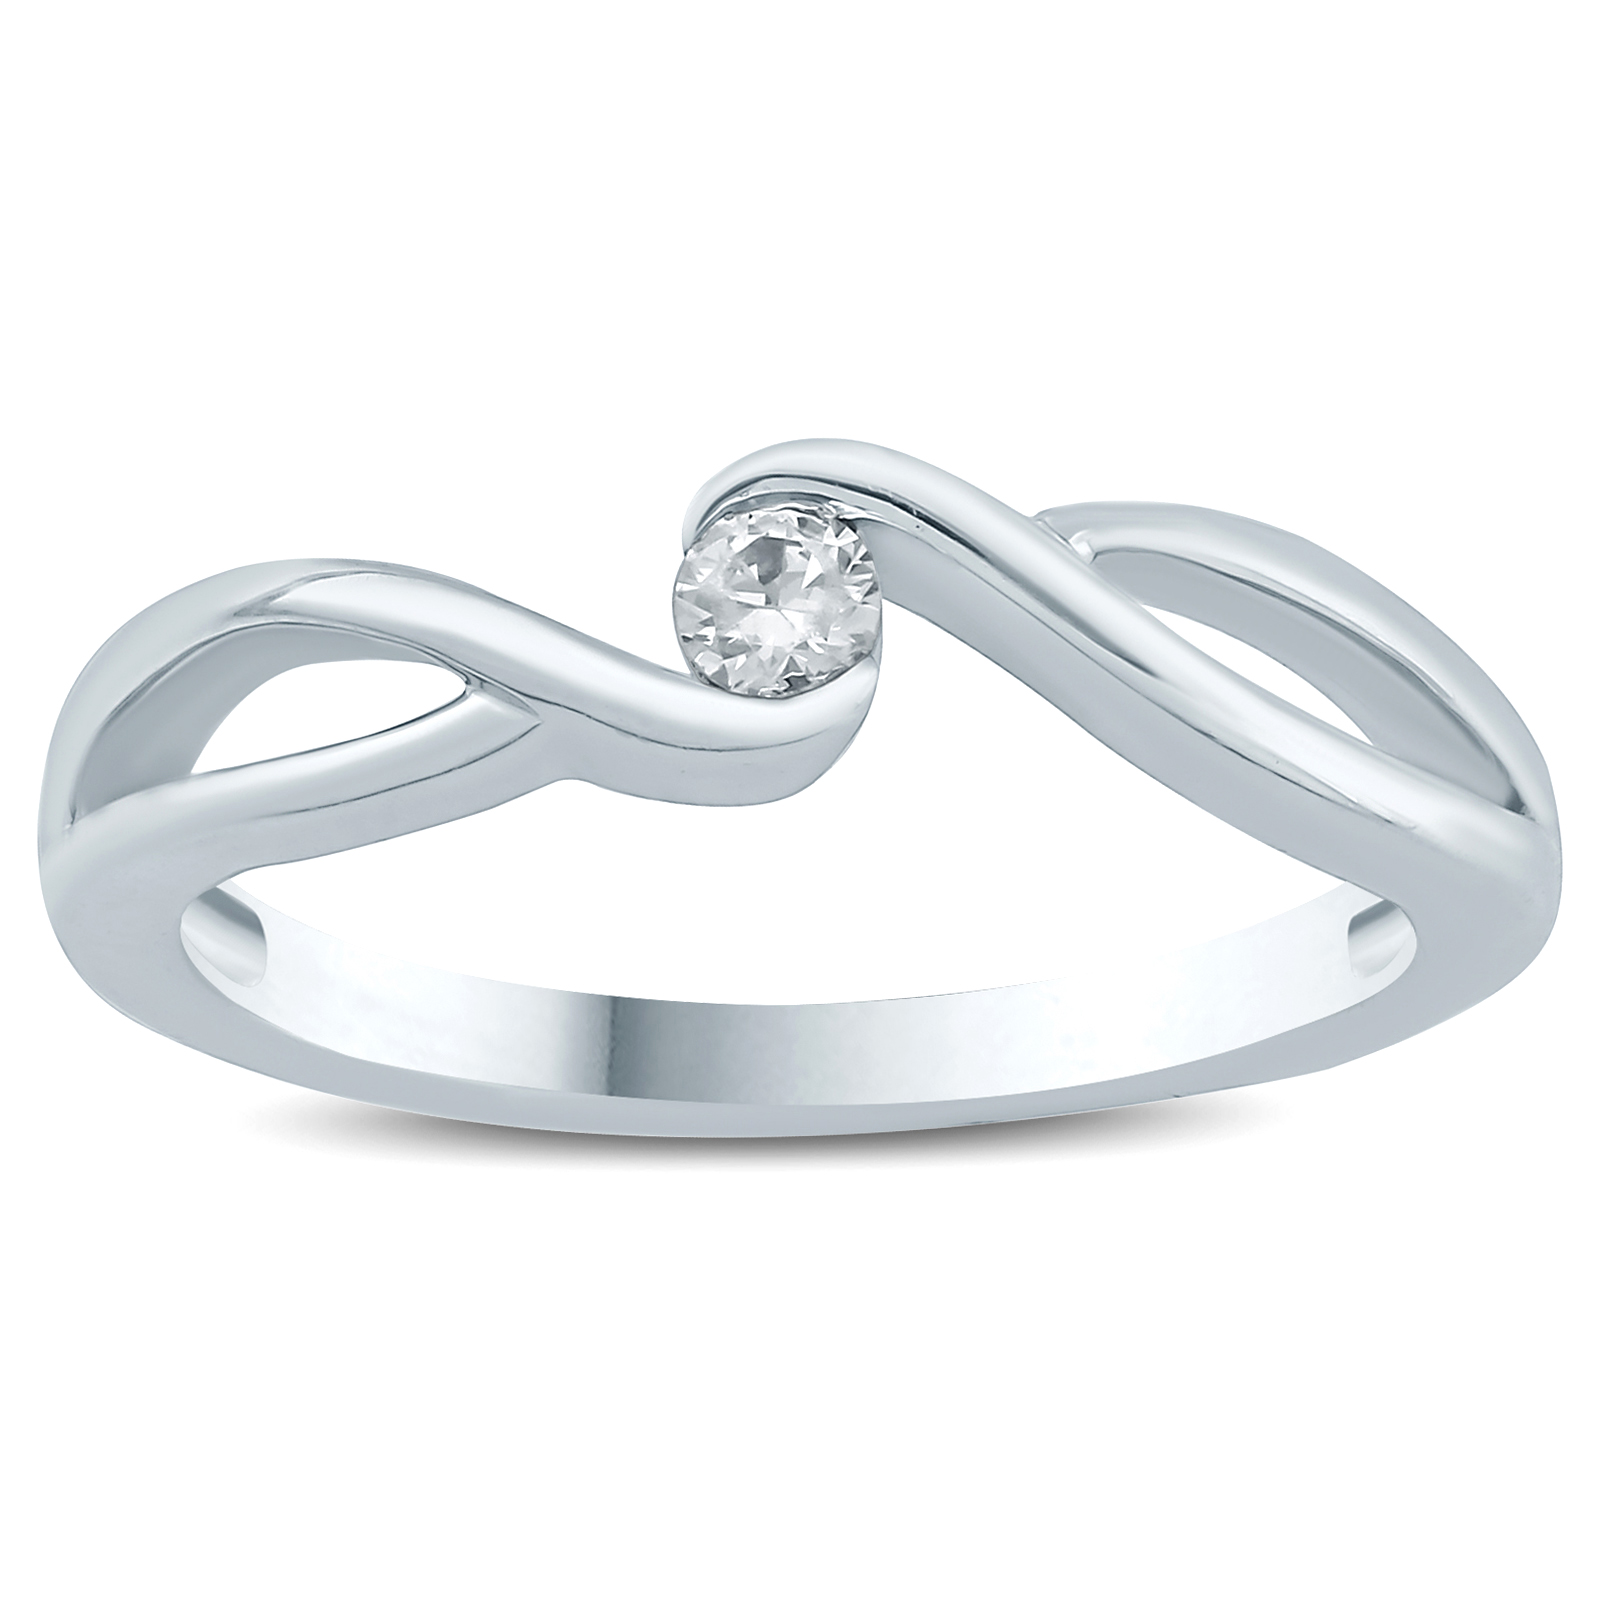 1/10 Carat TW Diamond Fashion Ring in 10K White Gold